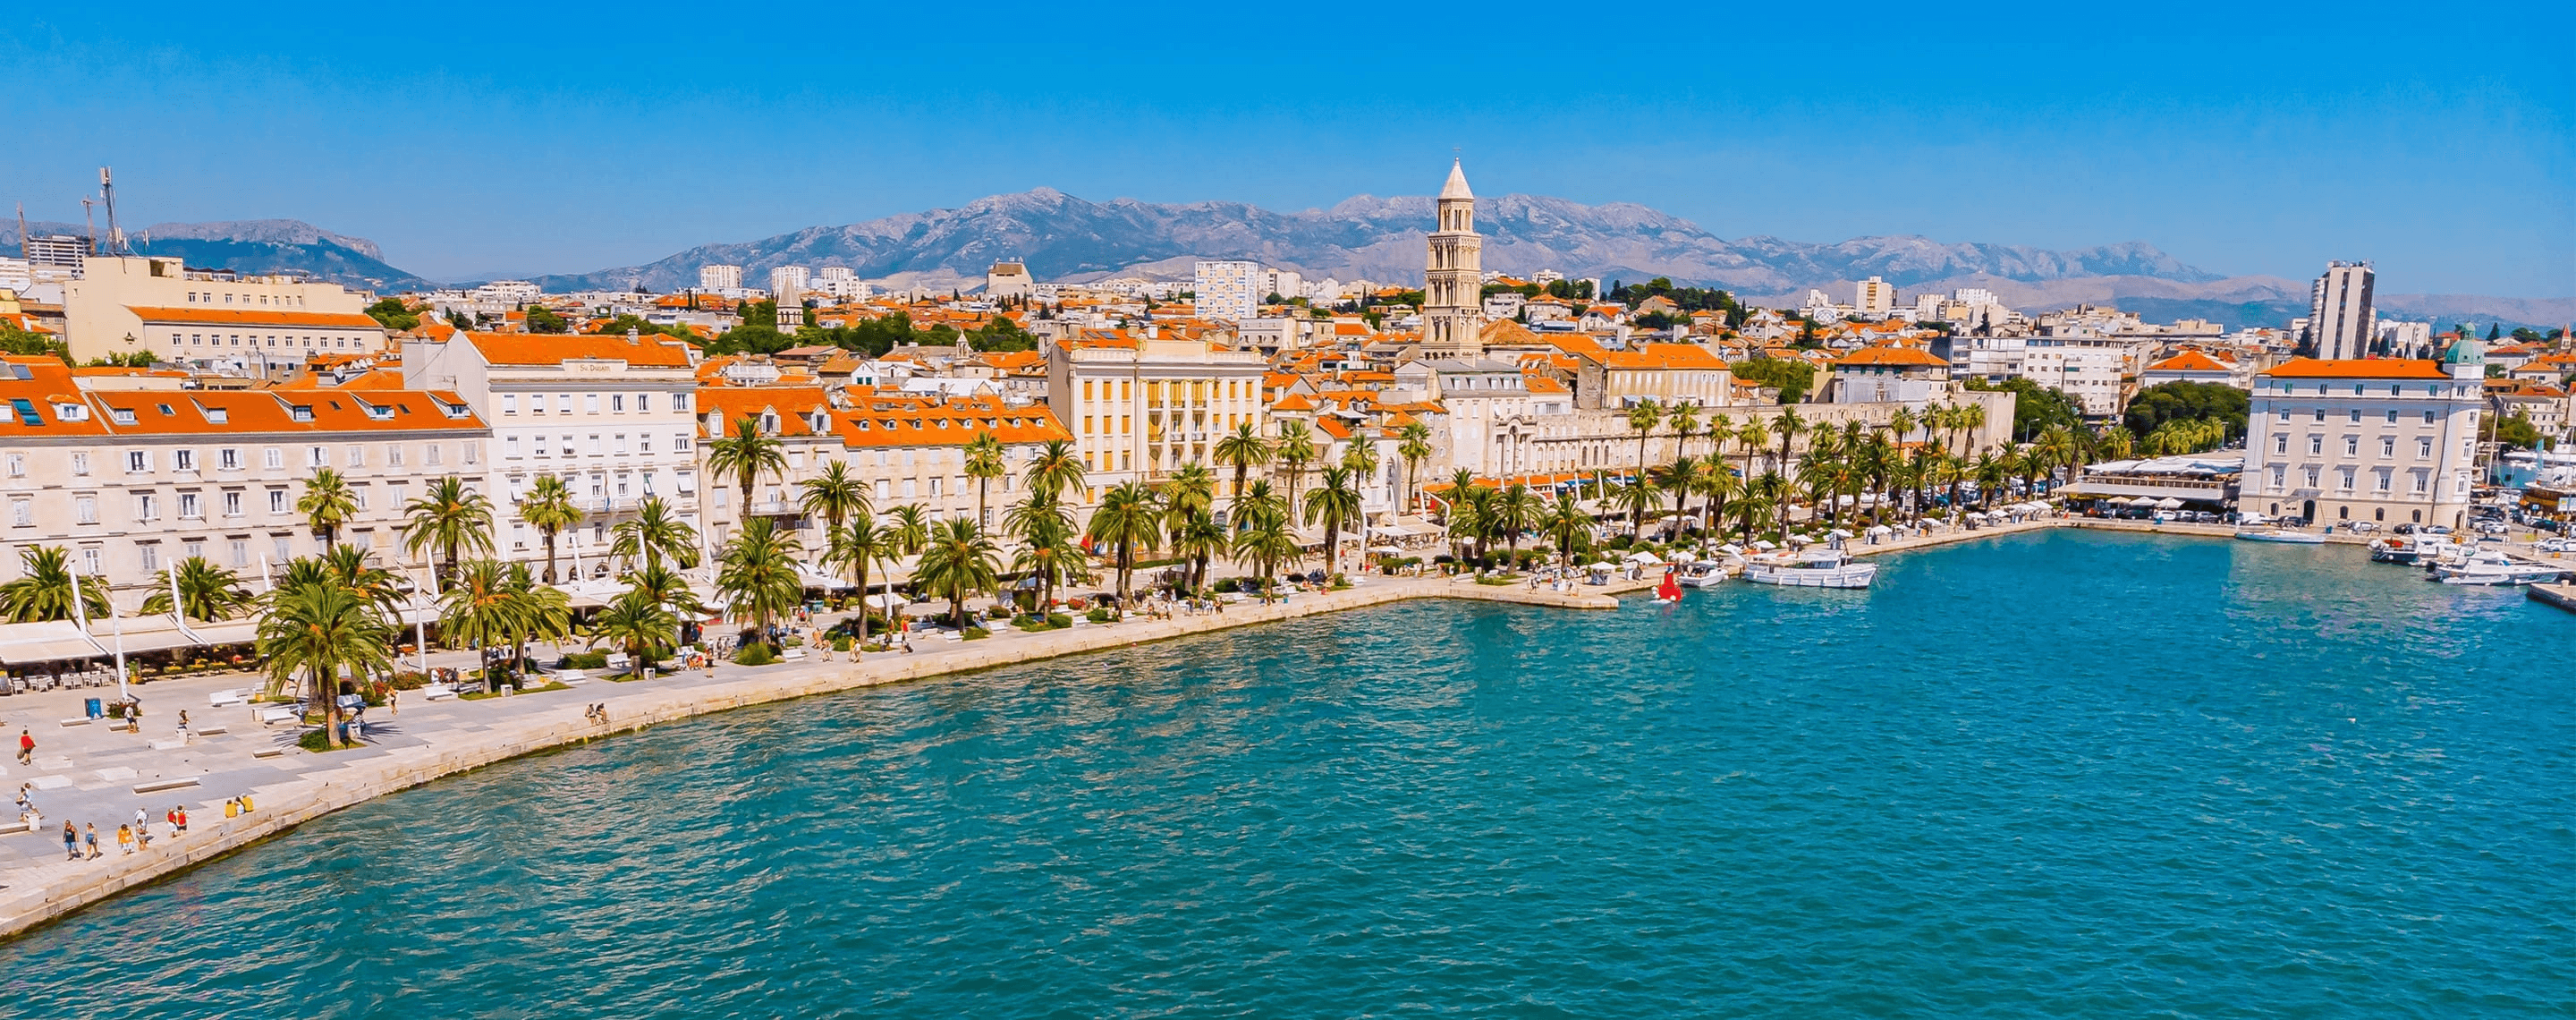 Panoramablick auf die Promenade von Split, Kroatien